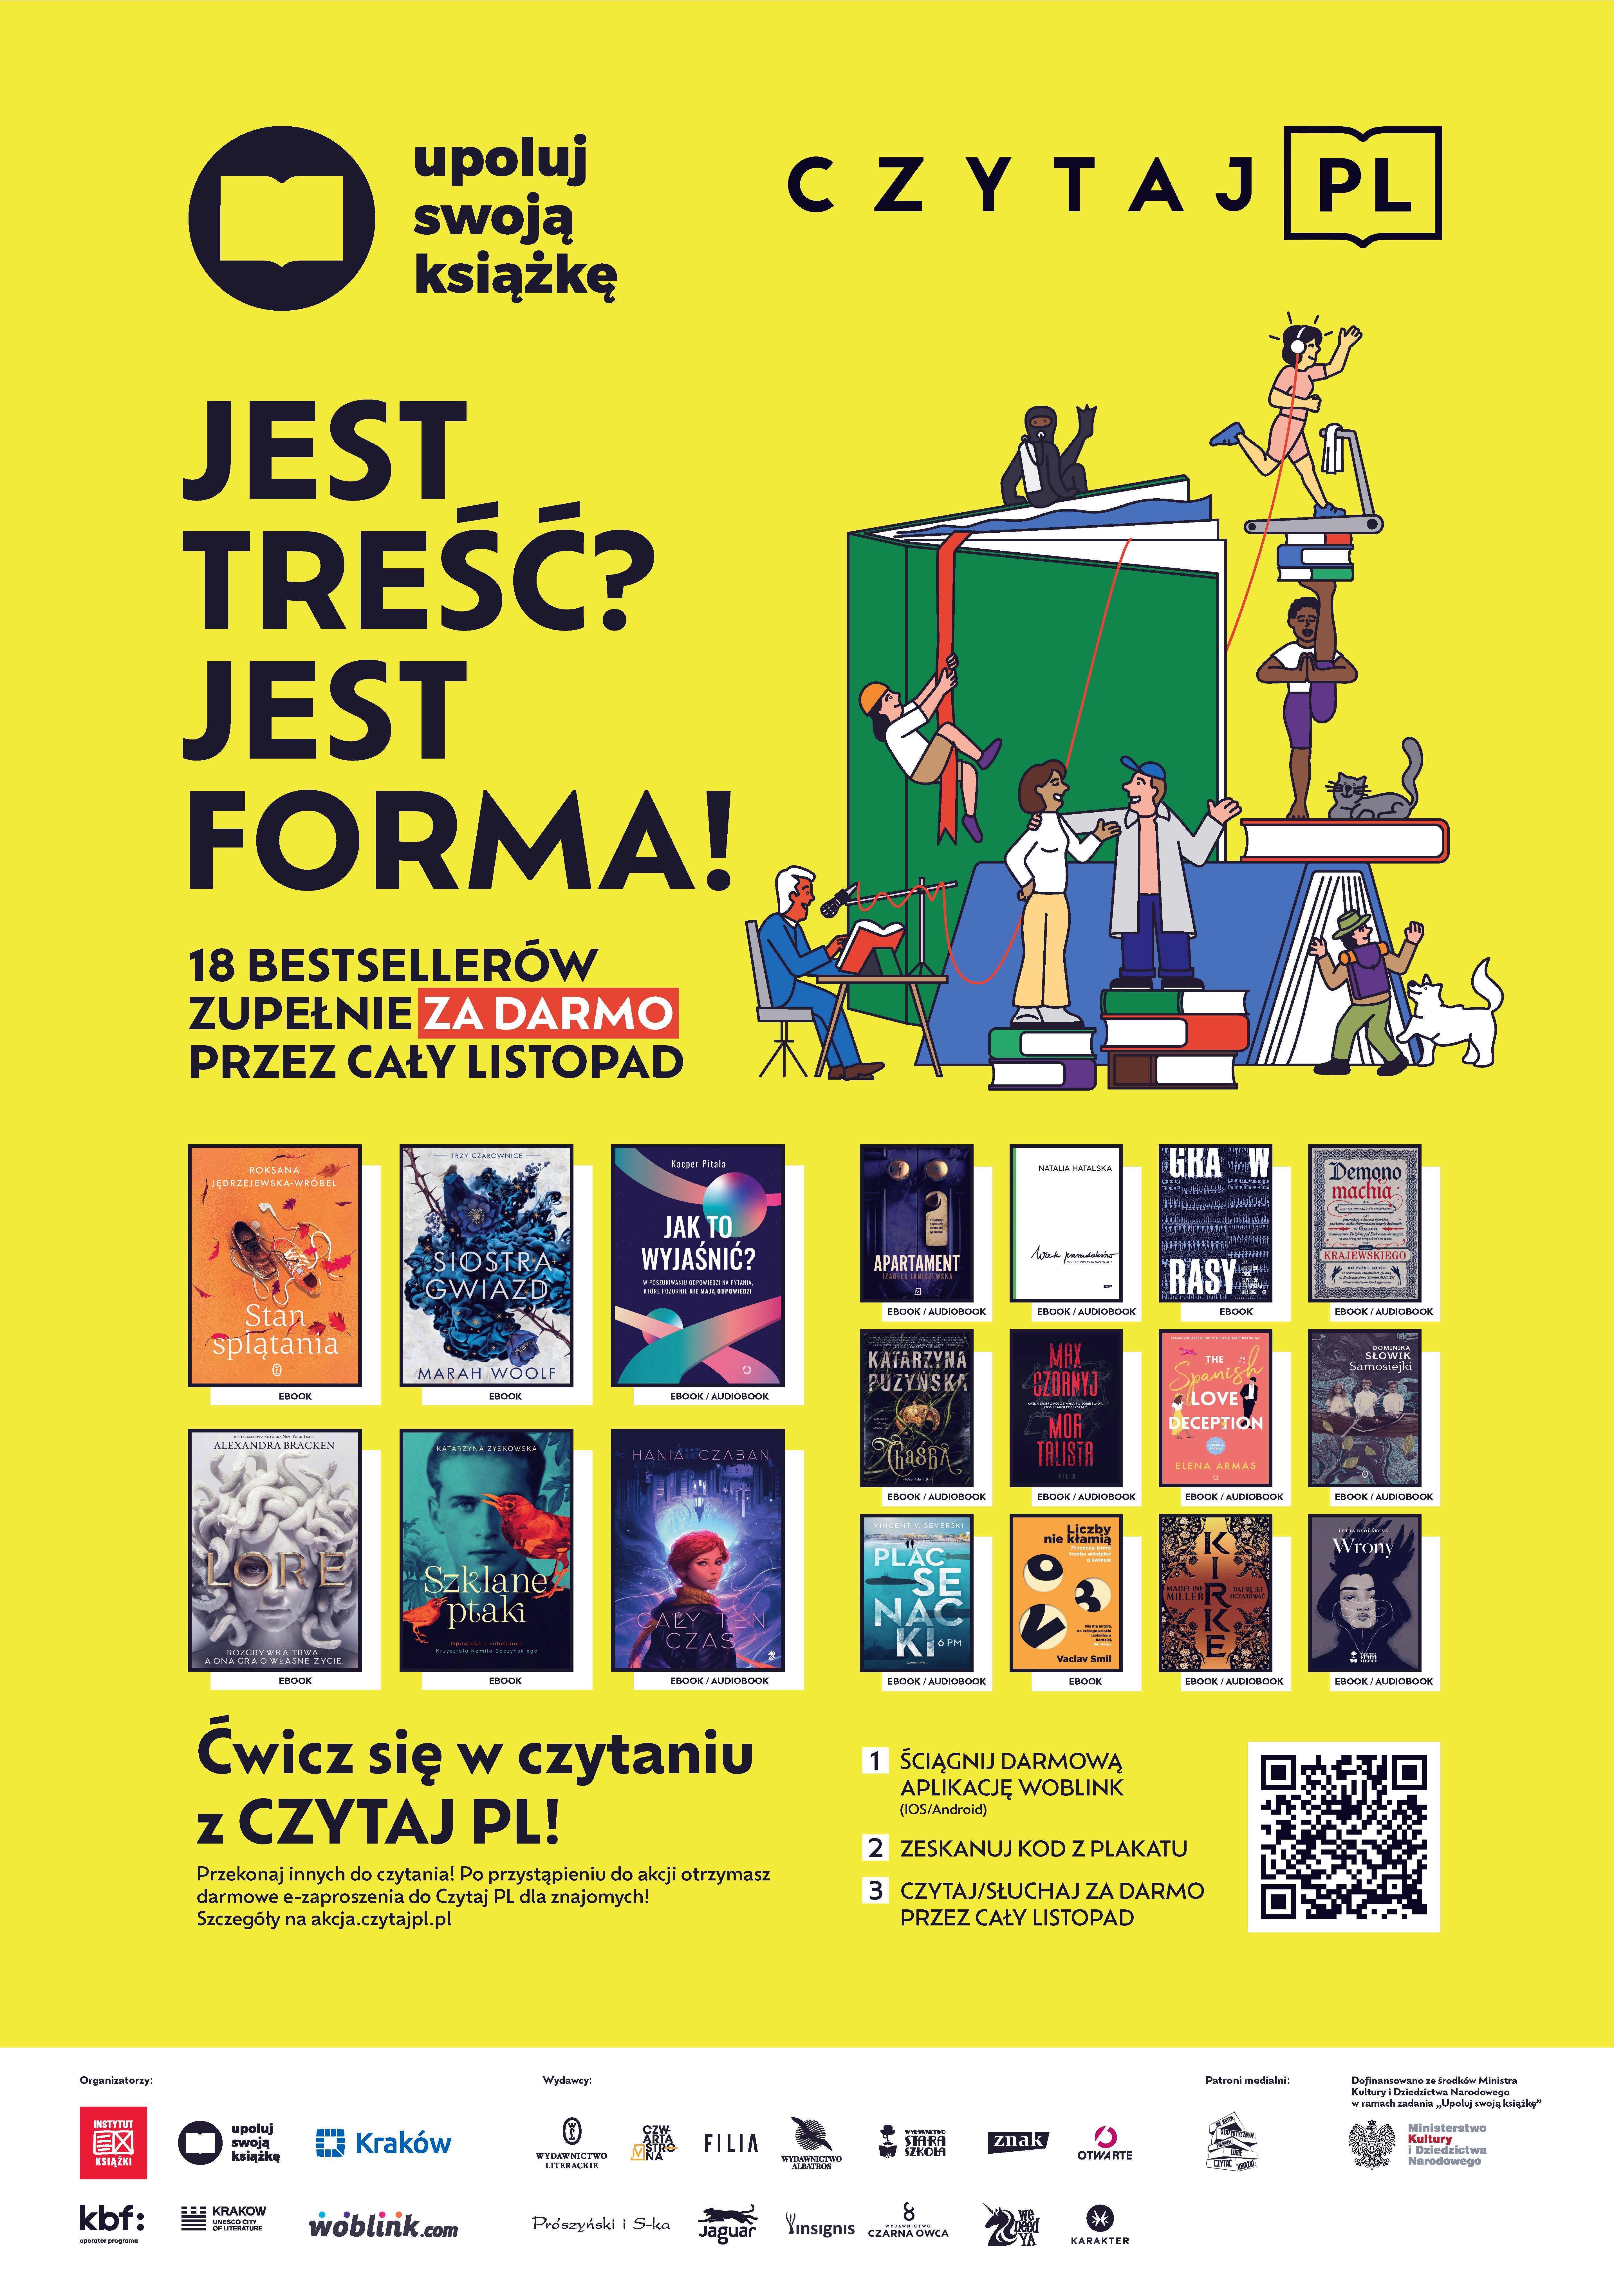 Akcja „Upoluj swoją książkę&quot; w ramach ogólnopolskiej akcji Czytaj PL rozpoczęta!